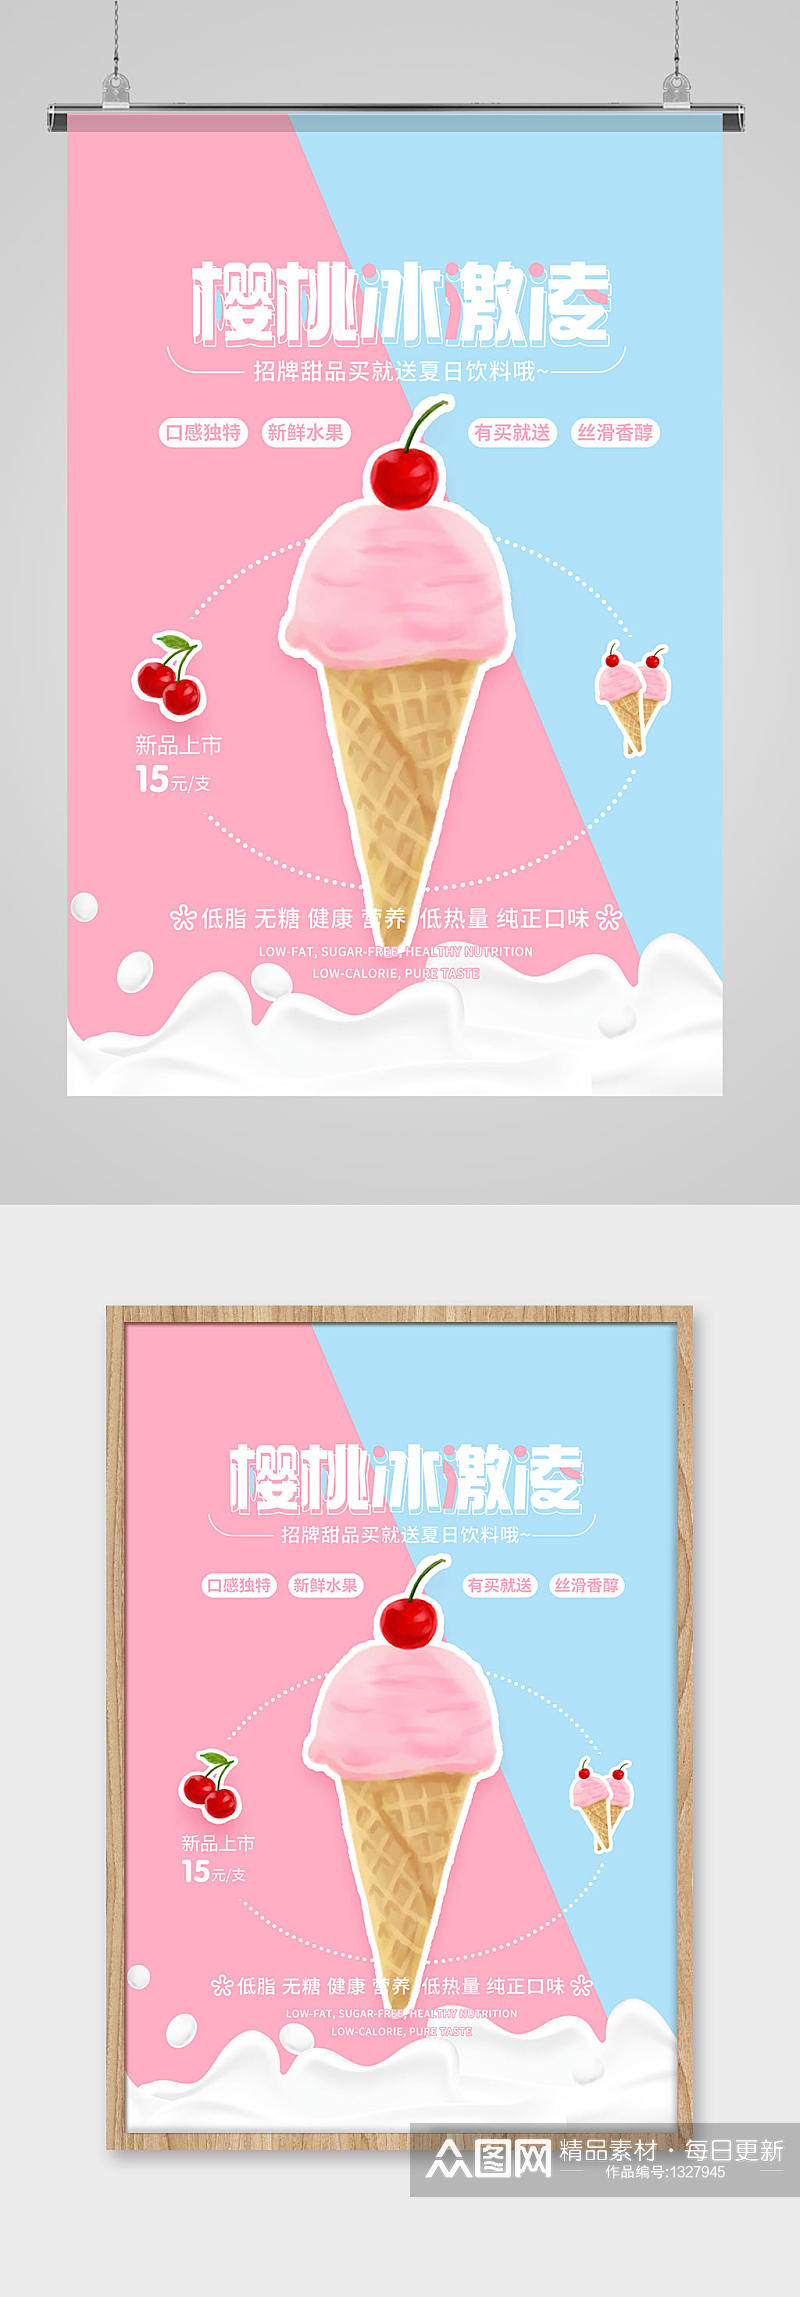 樱桃冰激凌招牌甜品海报素材